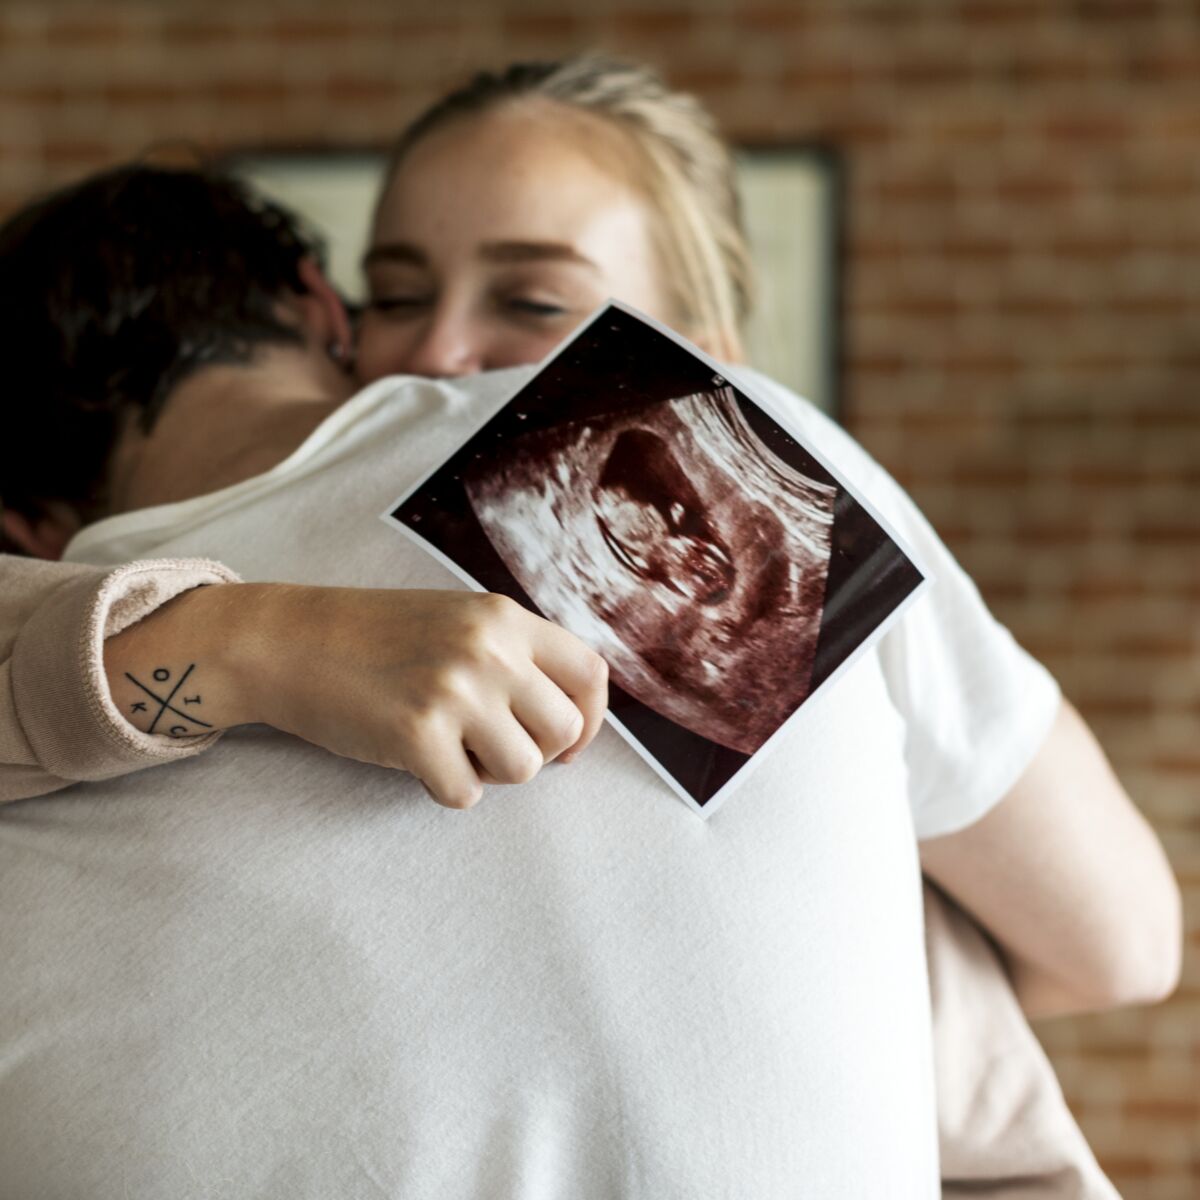 5e mois de Grossesse : Quoi savoir - Échographie du sexe de votre bébé